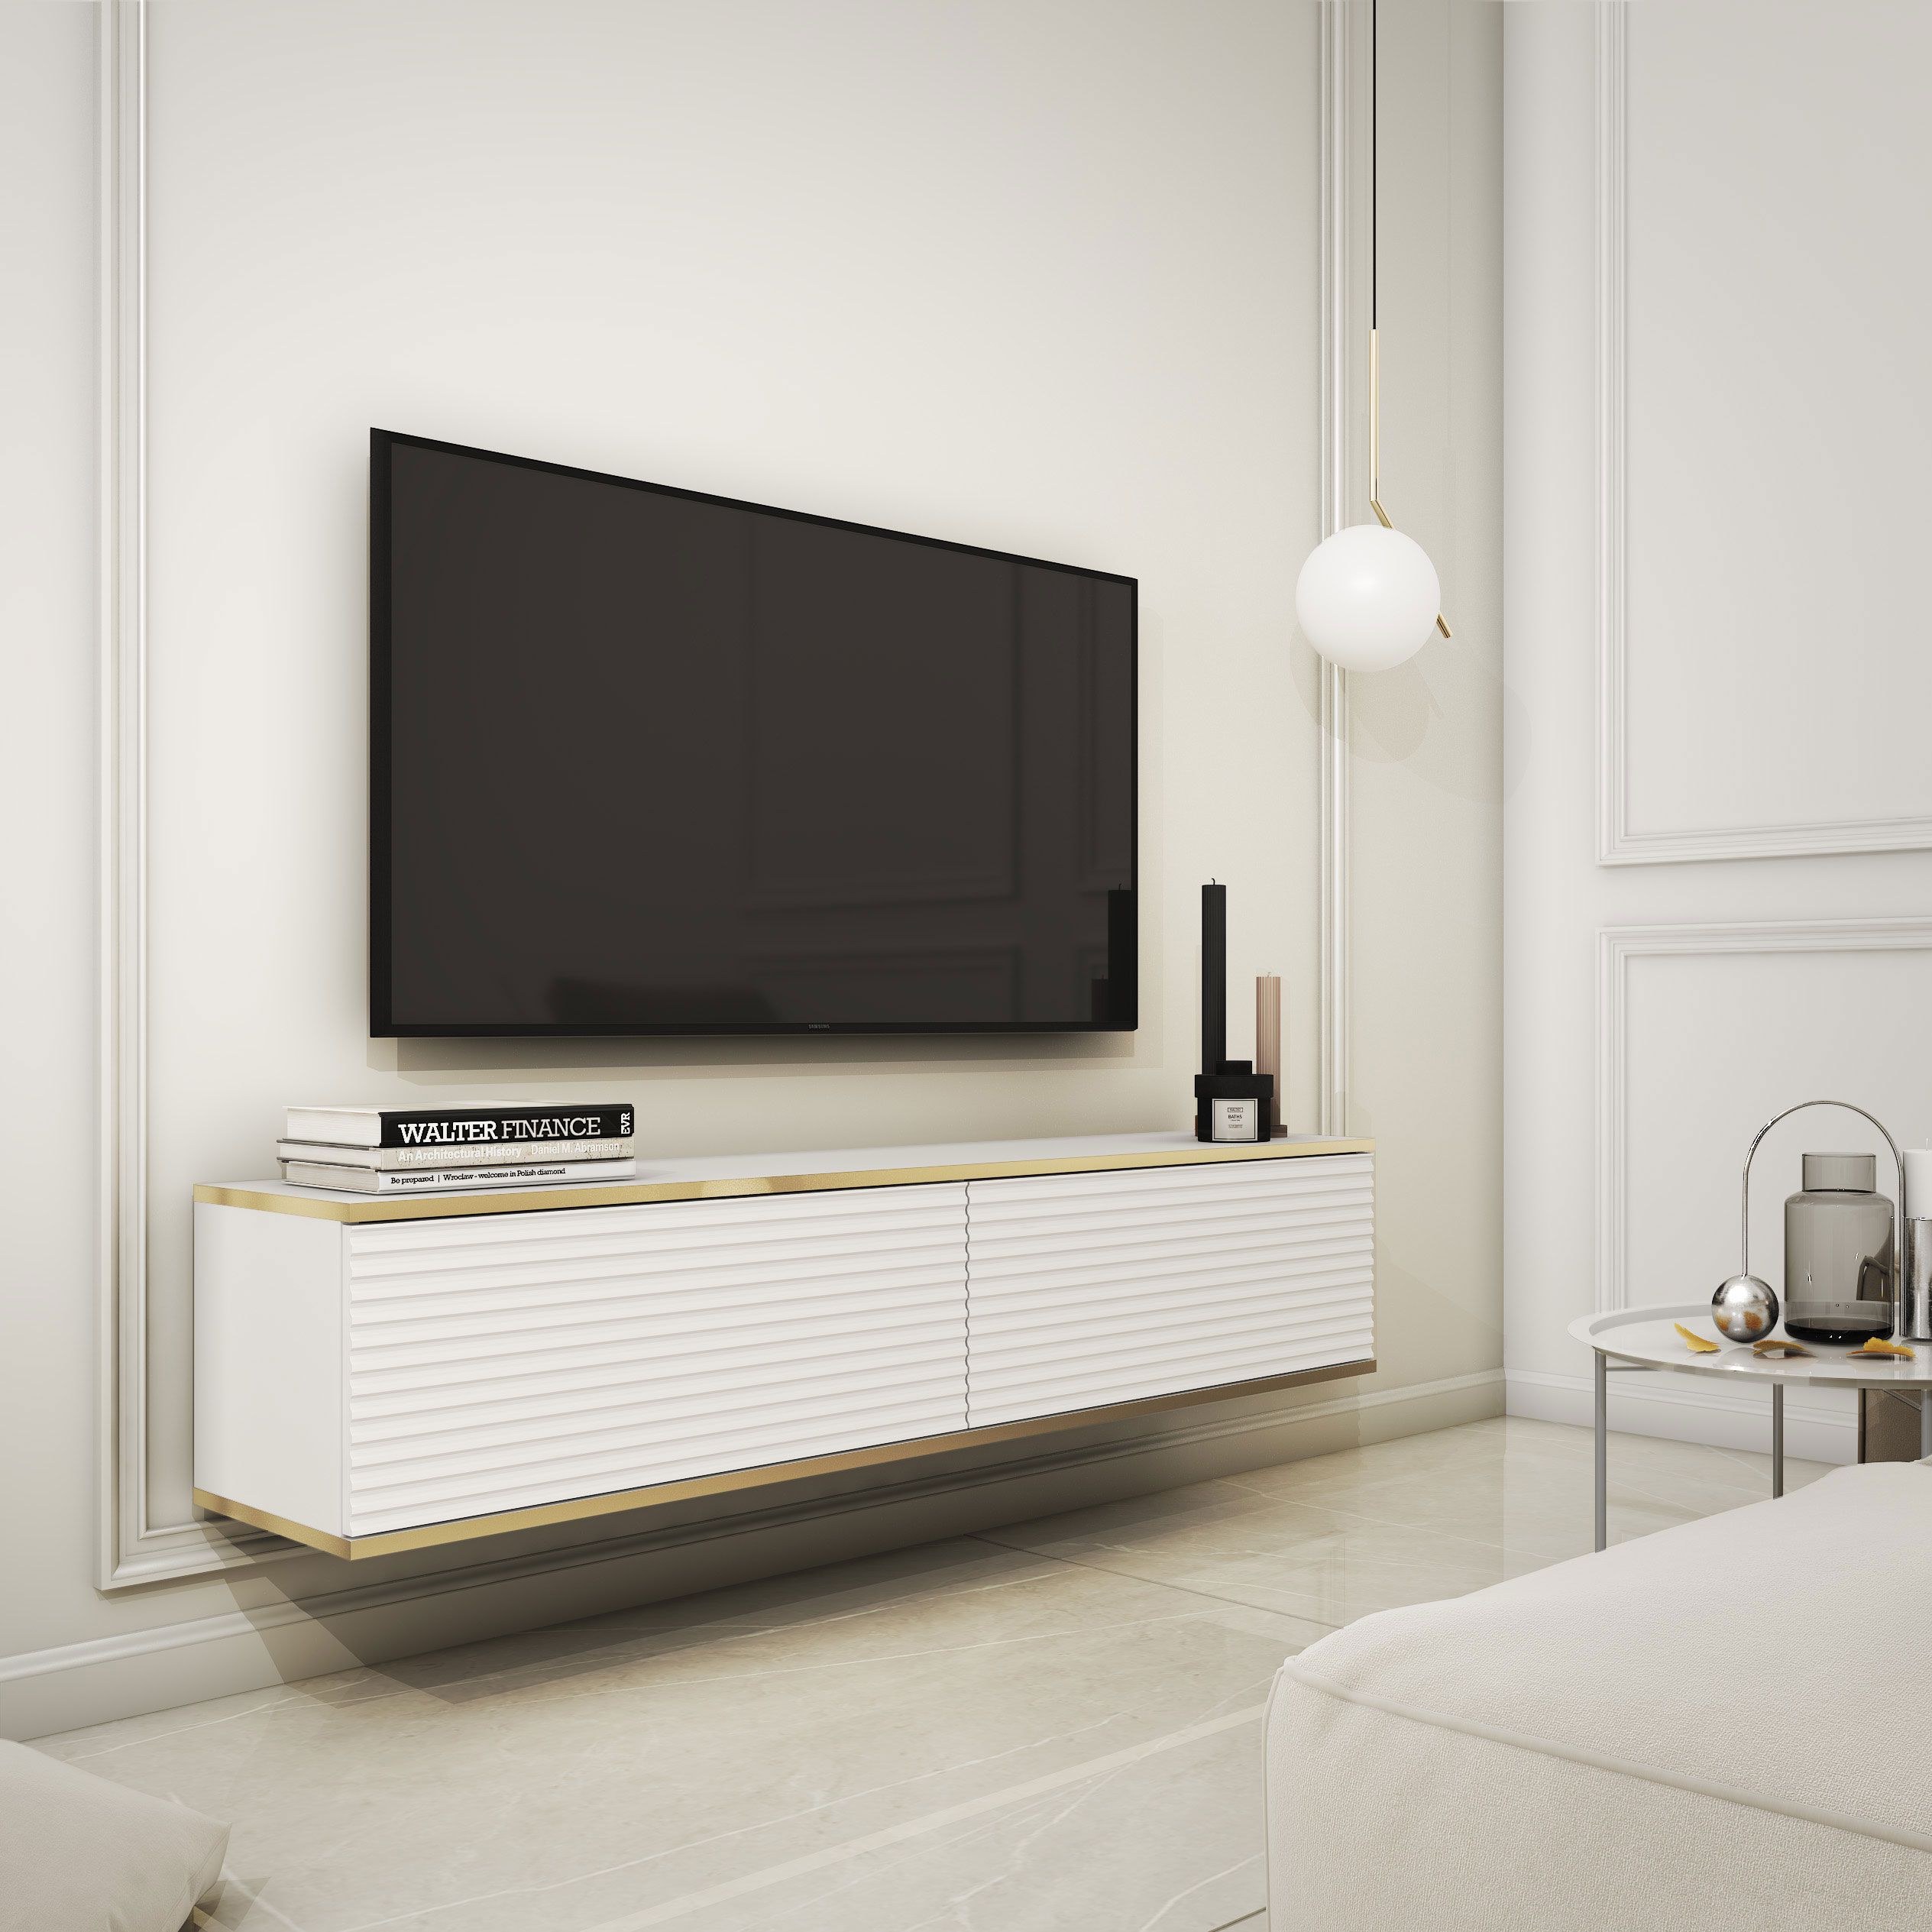 Meuble TV sobre avec fonction push-to-open Horsham 02, Couleur : Blanc - Dimensions : 30 x 135 x 32 cm (H x L x P)